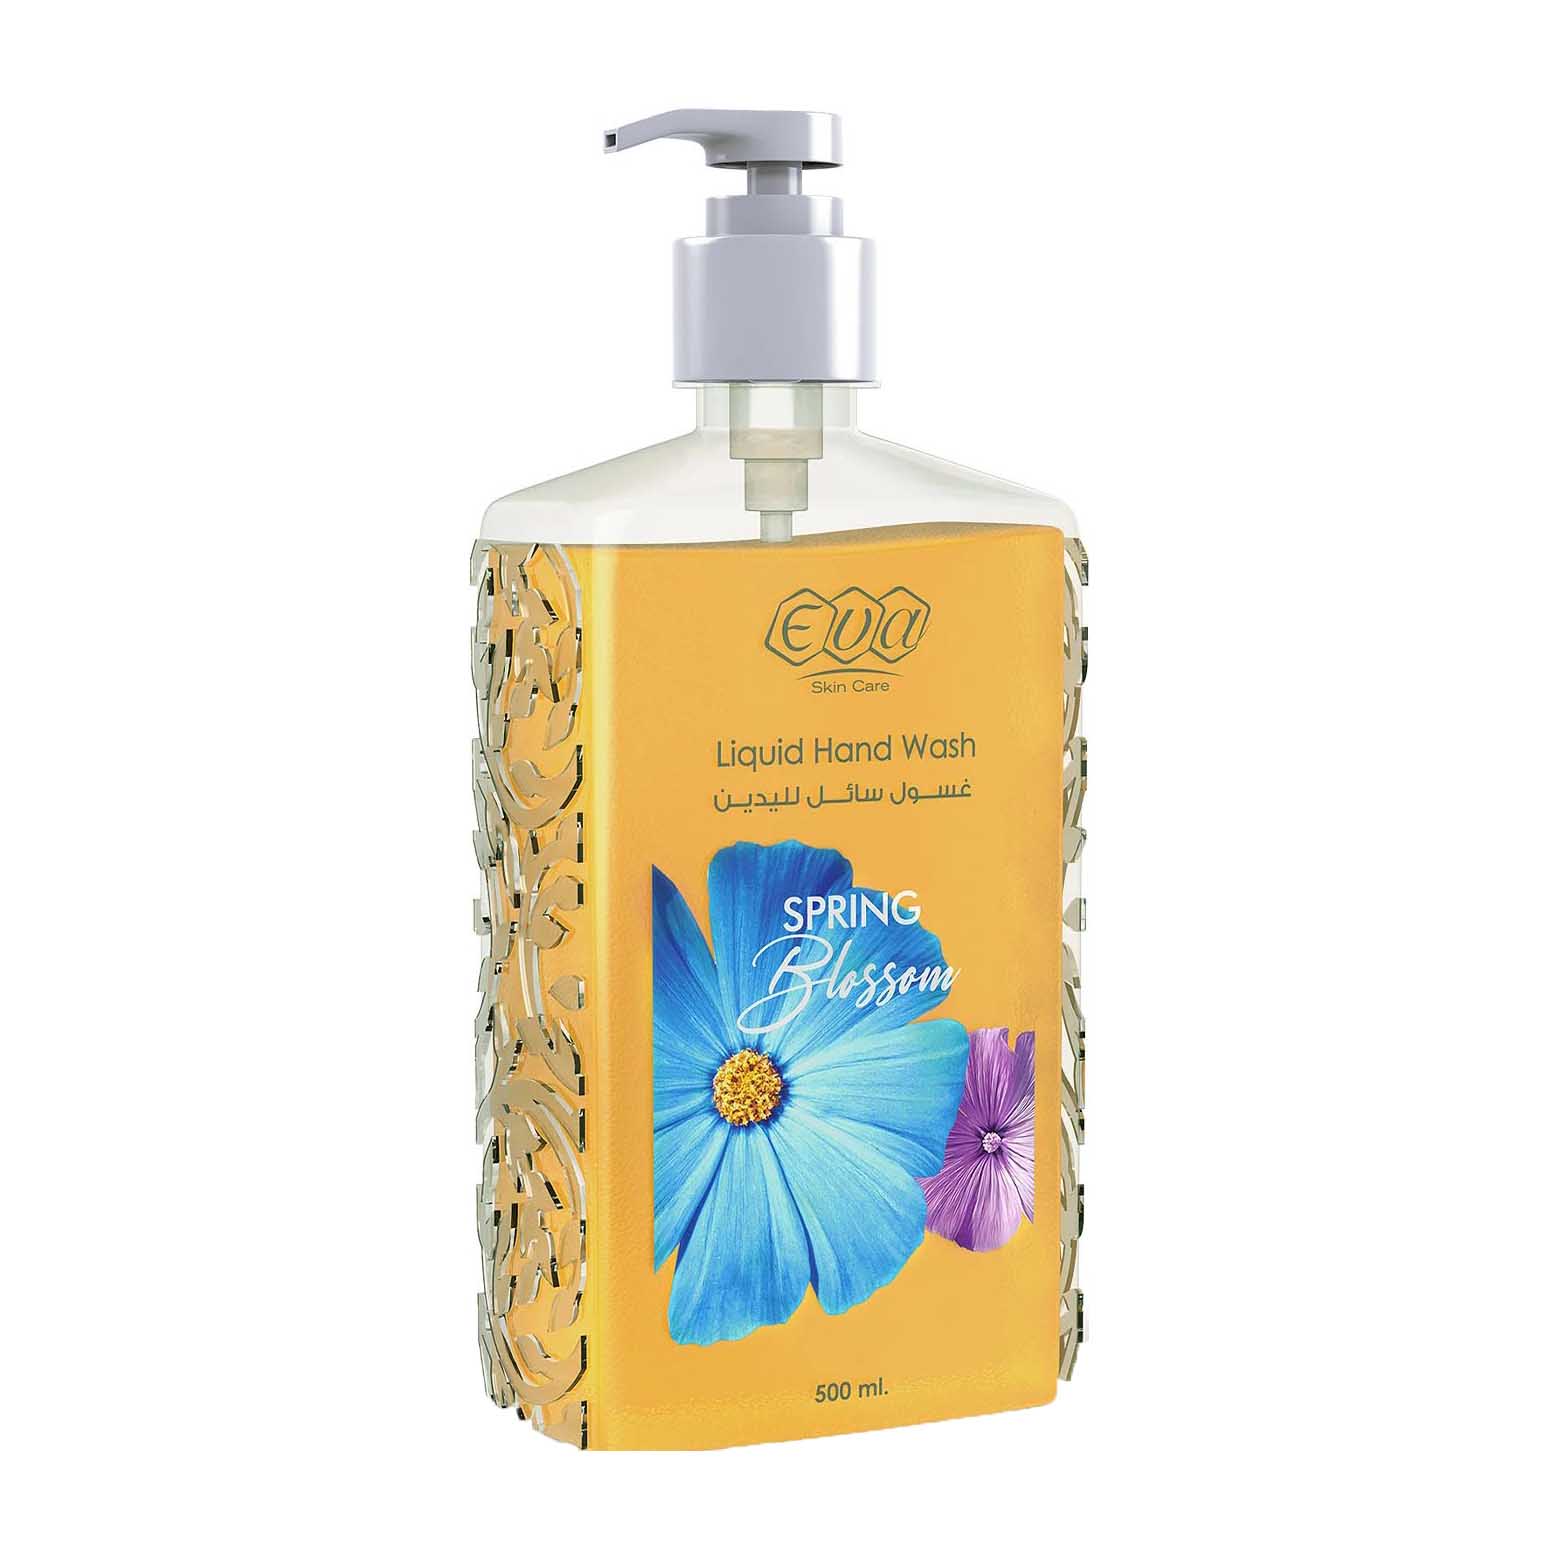 Eva Spring Blossom Liquid Hand Wash – 500ml - Bloom Pharmacy